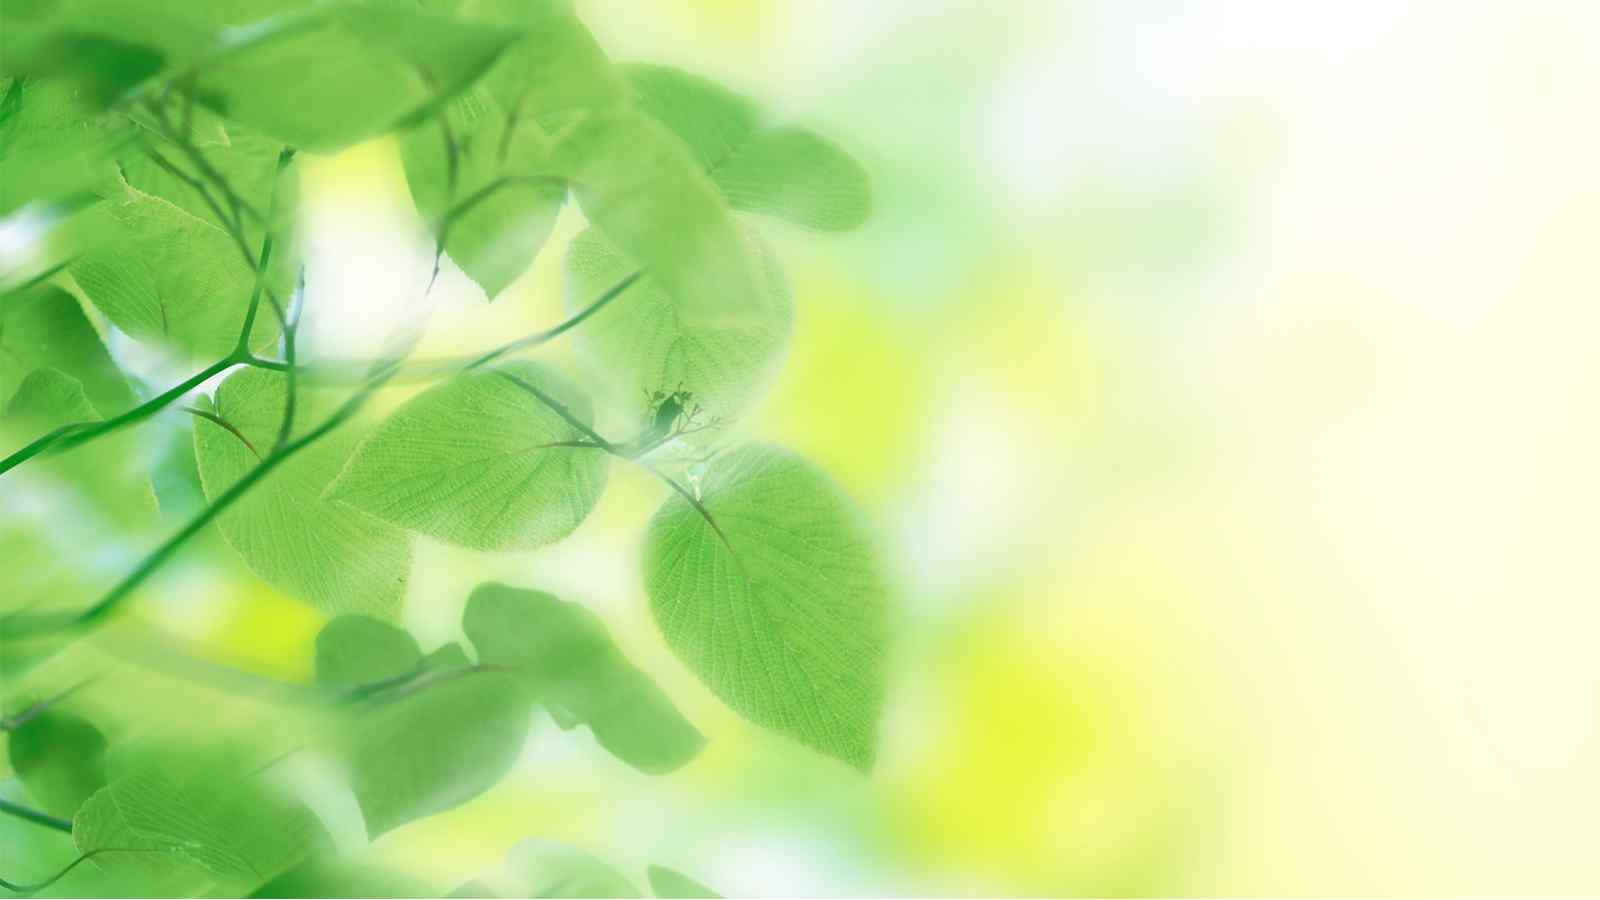 清新简约的唯美绿色植物风景图片壁纸 第一辑（6张）